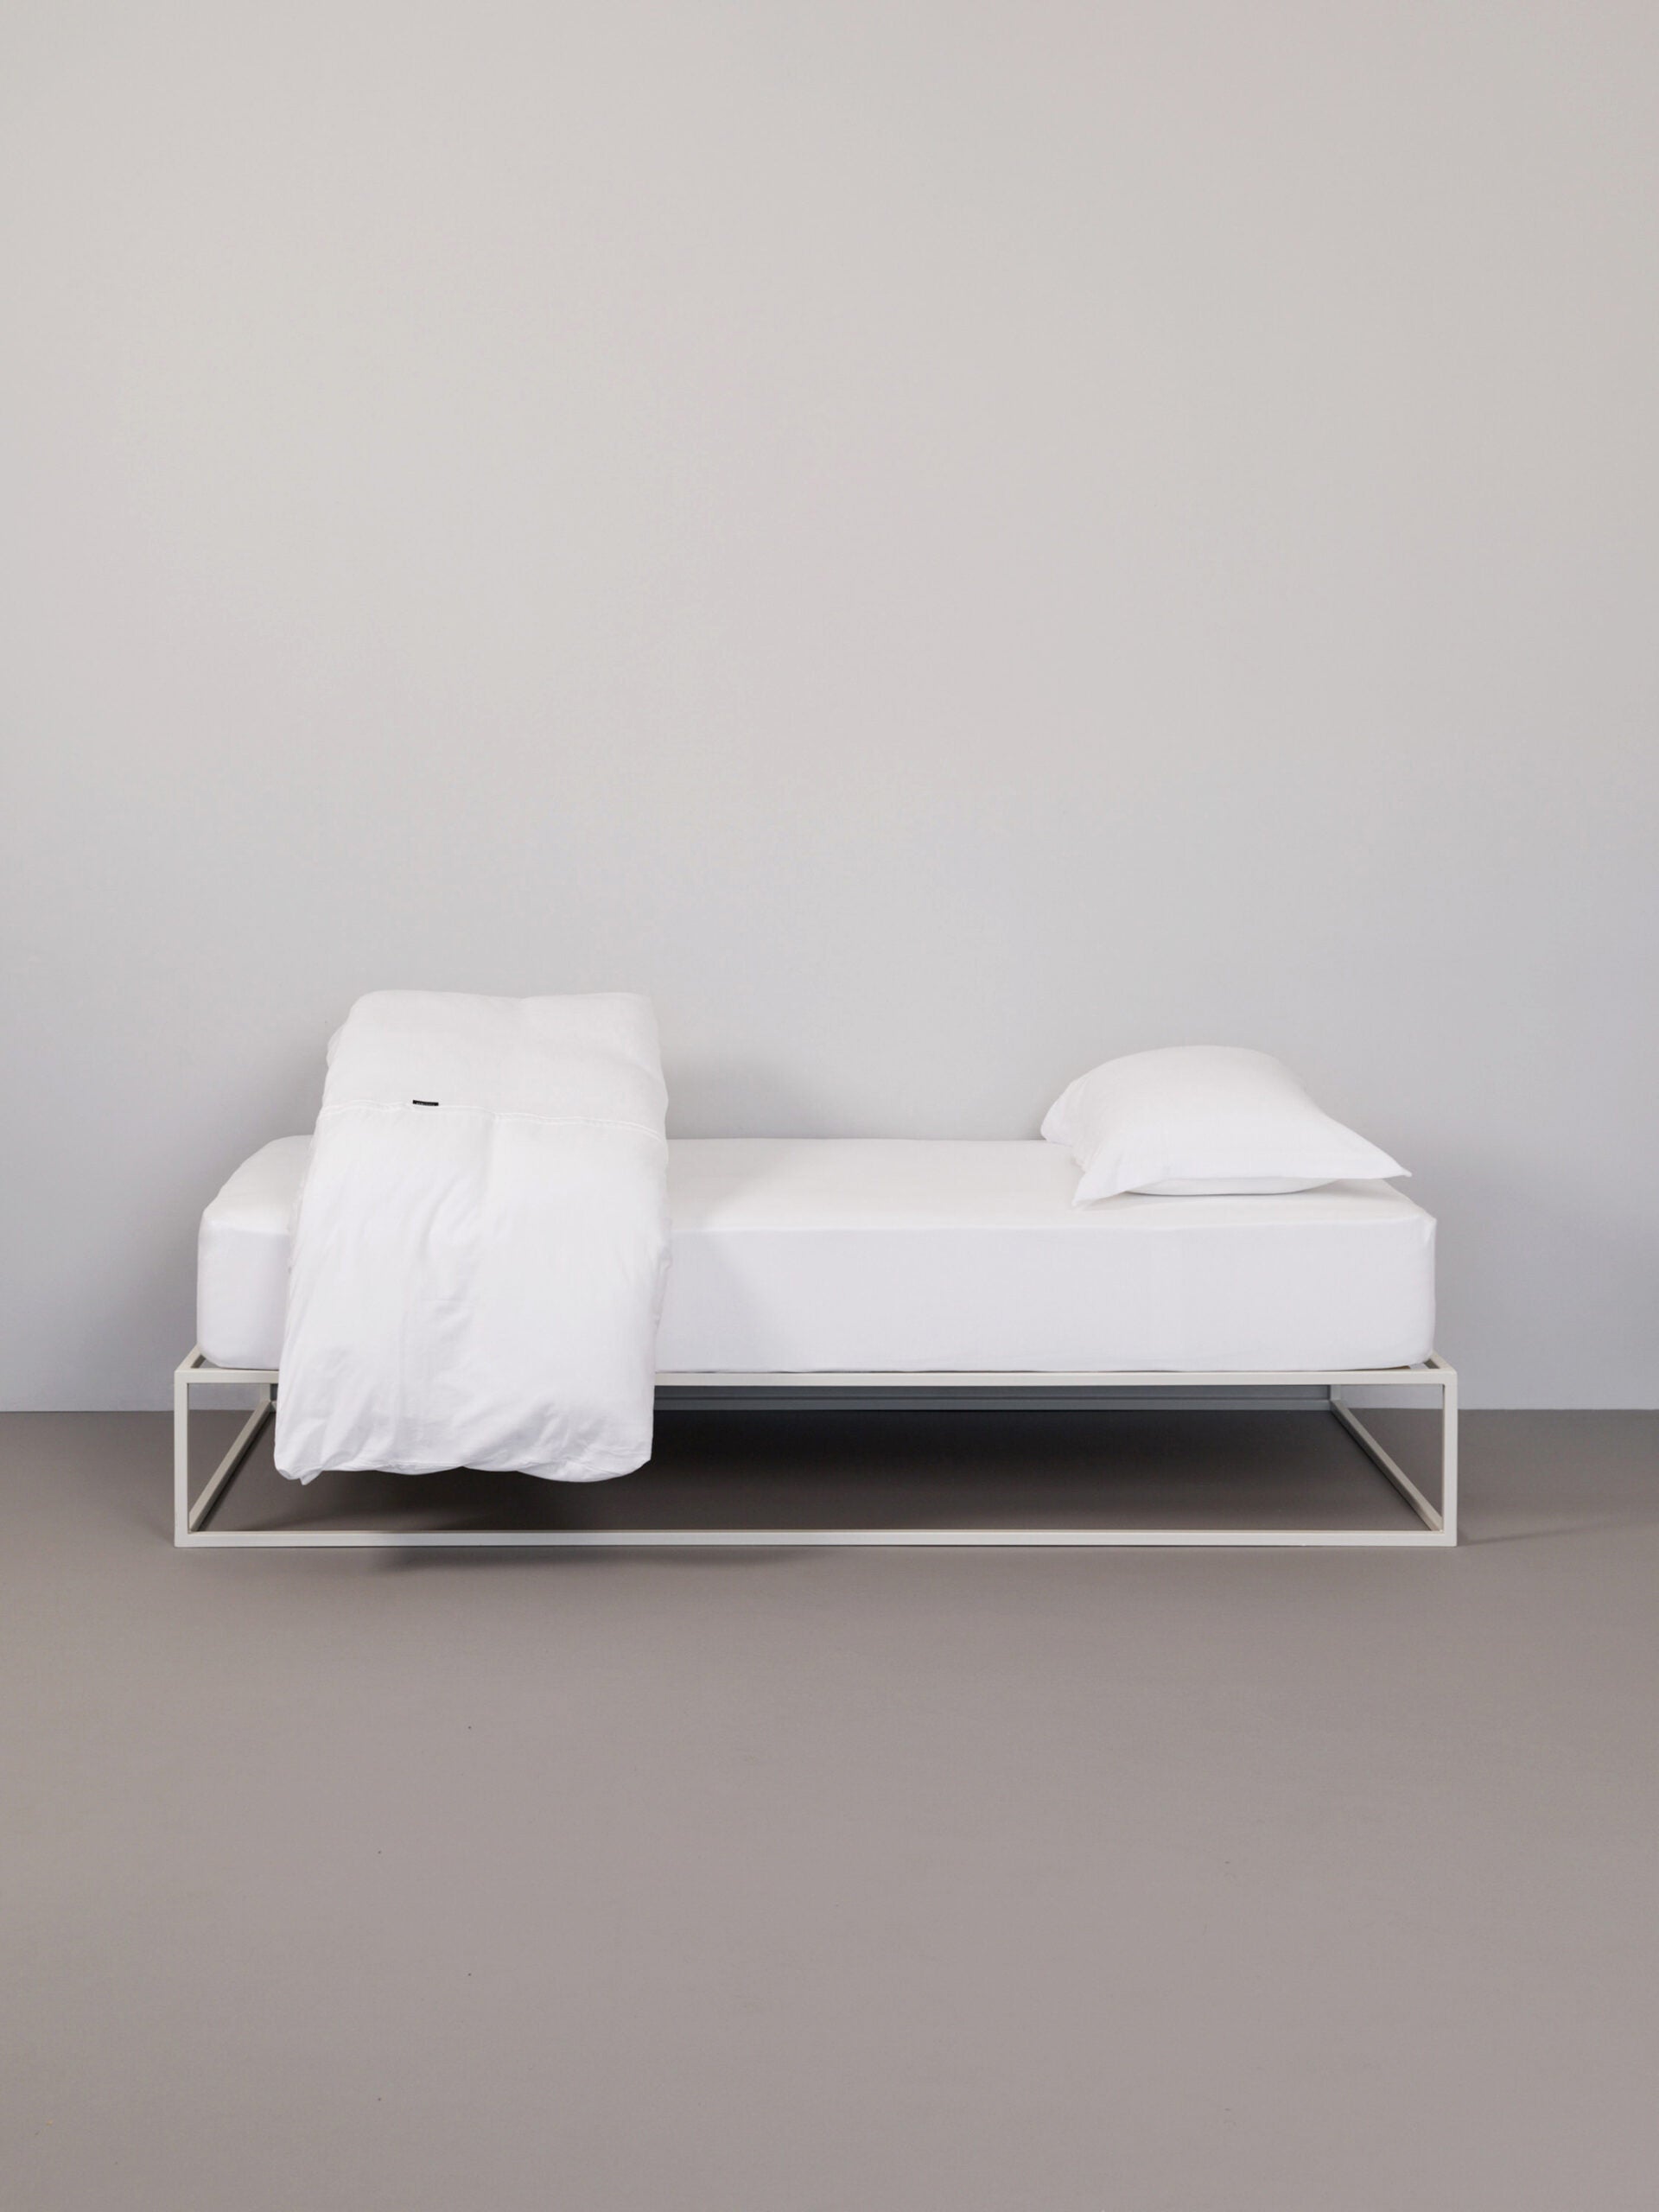 בתמונה: מיטת ברזל לבנה עם סדין, שמיכת פוך וכרית עם ציפית לכרית טריקו Jacquard בצבע לבן